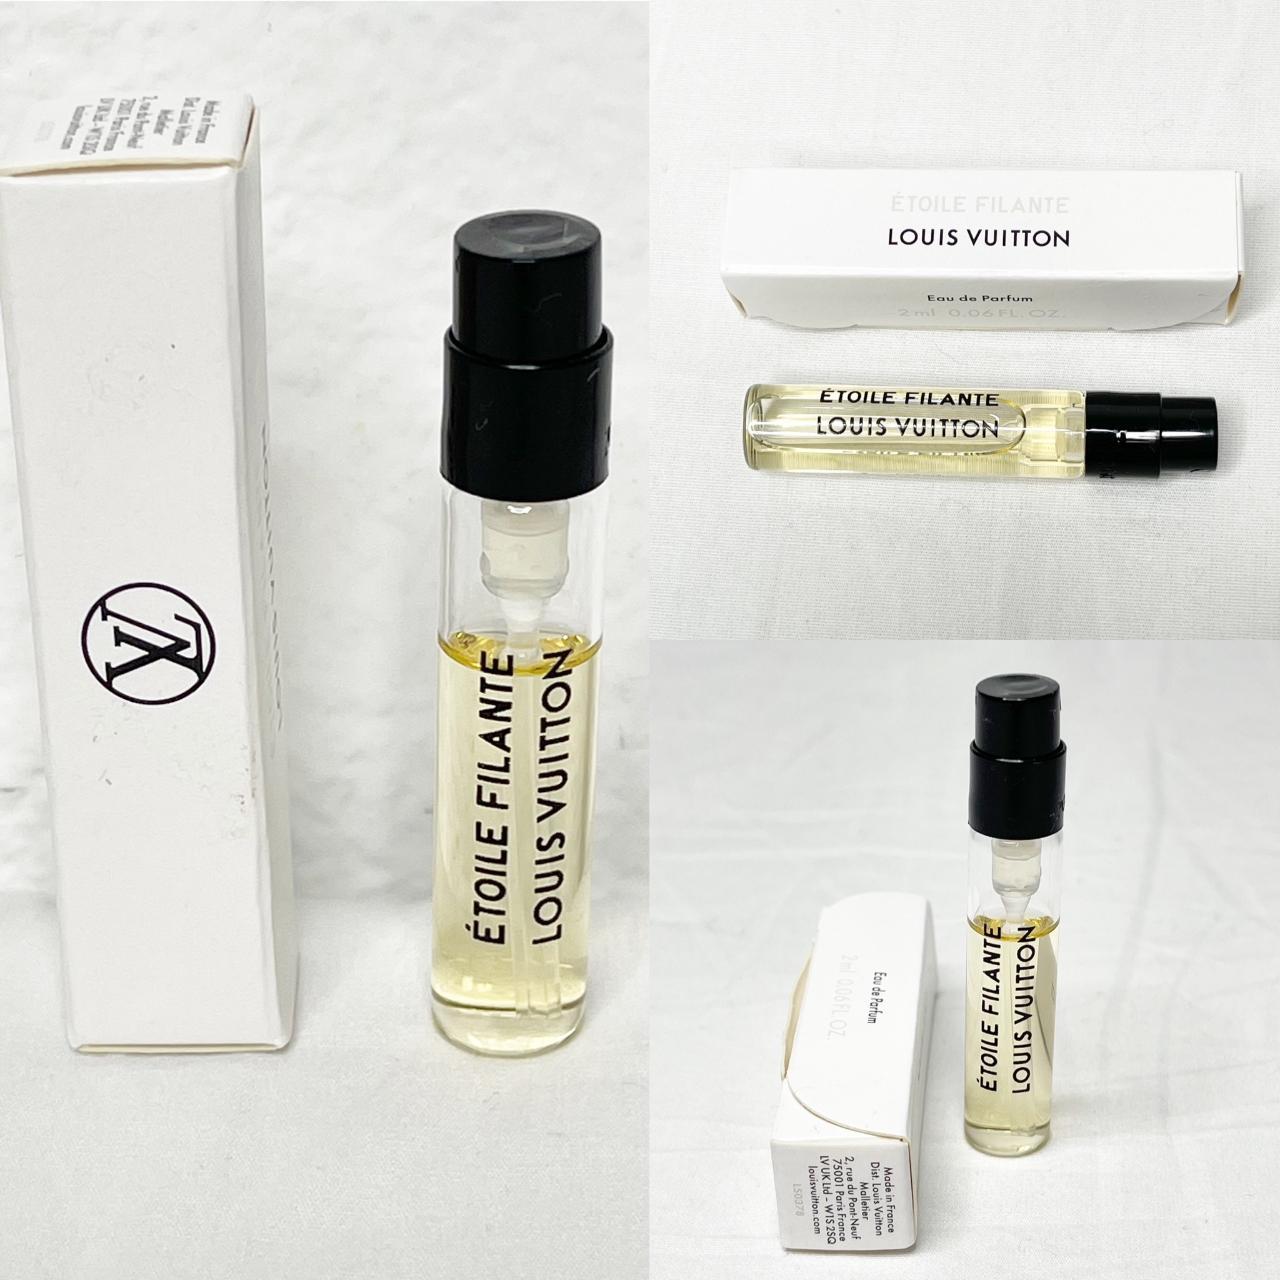 NEW LOUIS VUITTON Mini Spray Sample Perfume Fragrance Etoile Filante Travel  Box